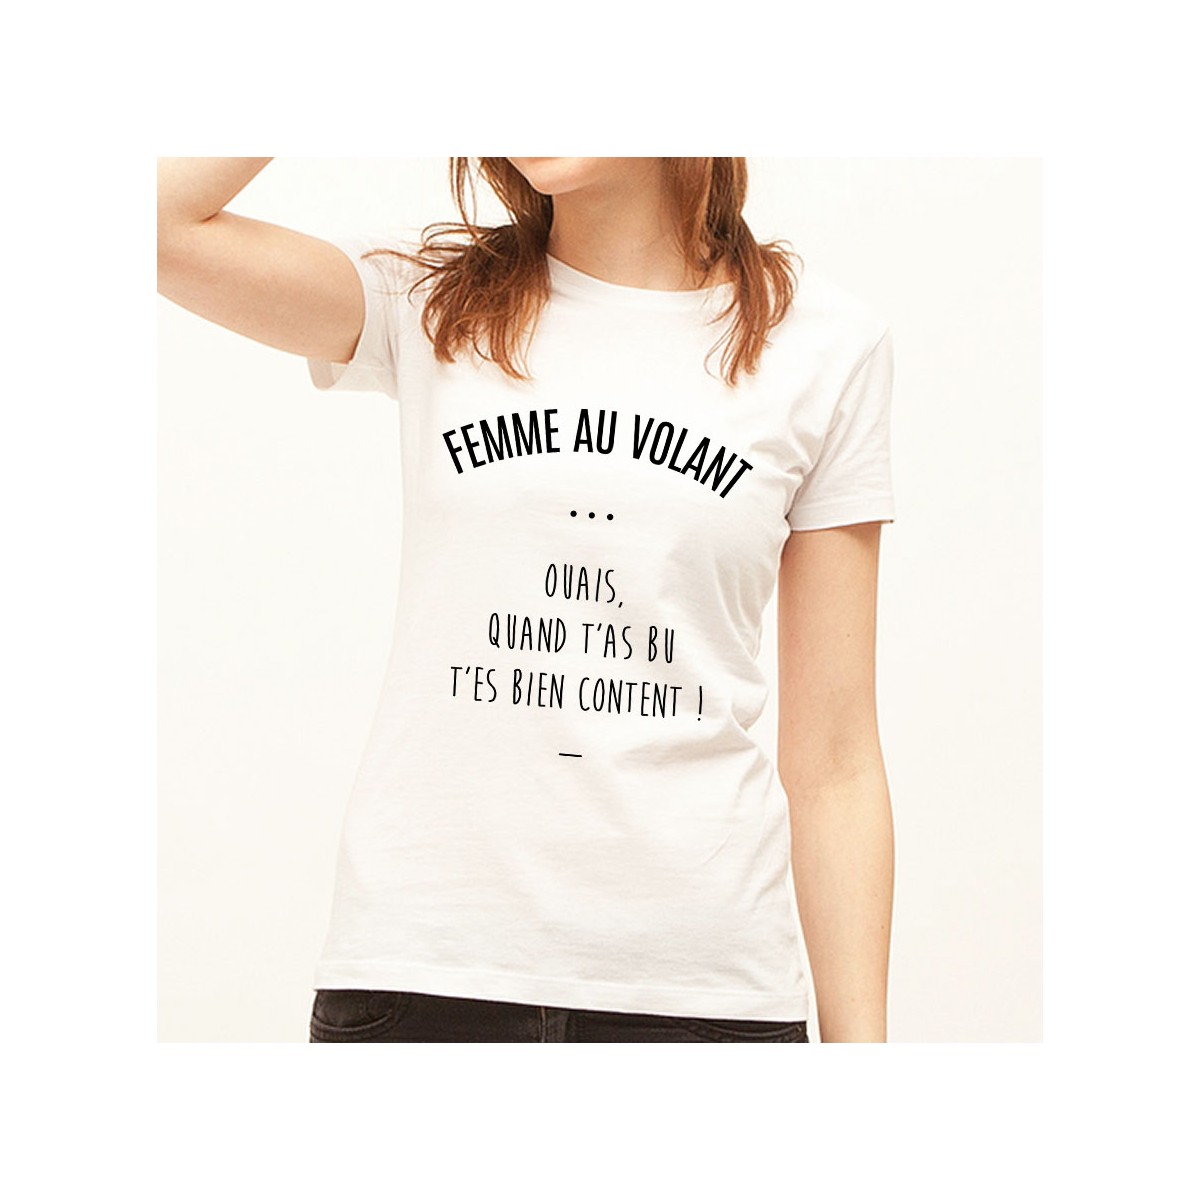 T-shirt Femme au volant